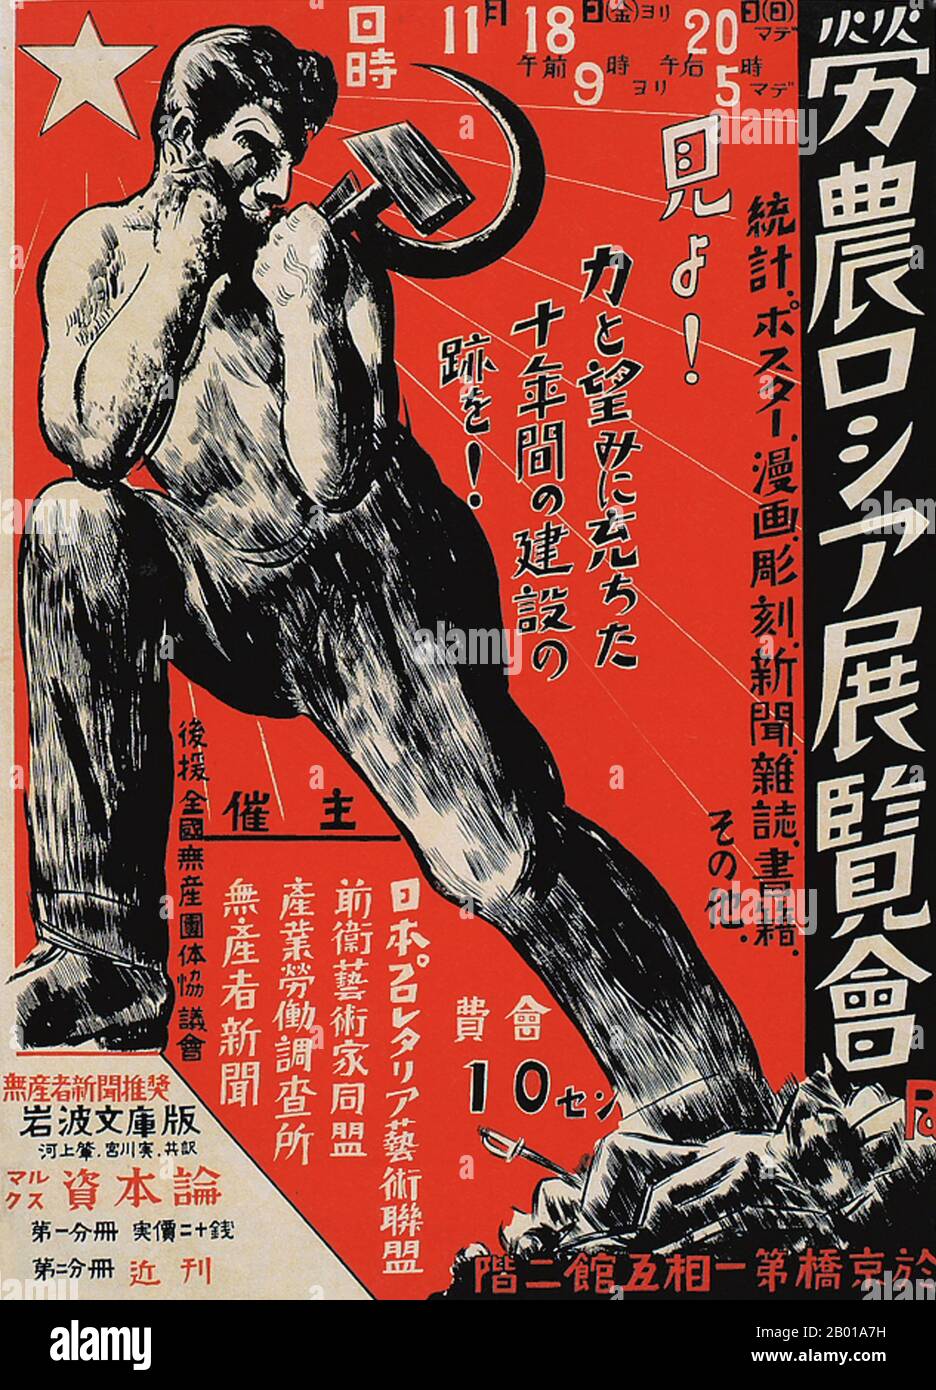 Japan: Arbeiter und Bauern Russische Kunstausstellung, Japan Proletarian Art League. Poster von Masamu Yanase (1900-1945), 1927. Ende 1920s und 1930s entwickelte sich in Japan ein neuer Plakatstil, der den wachsenden Einfluss der Massen in der japanischen Gesellschaft widerspiegelt. Diese Kunstplakate waren stark von den aufkommenden politischen Kräften des Kommunismus und des Faschismus in Europa und der Sowjetunion beeinflusst und nahmen einen Stil an, der kühne Slogans mit künstlerischen Themen einarbeitete, die vom linken sozialistischen Realismus über Staatismus und staatlich gelenkte öffentliche Wohlfahrt bis hin zu Militarismus und imperialistischem Expansionismus reichten. Stockfoto